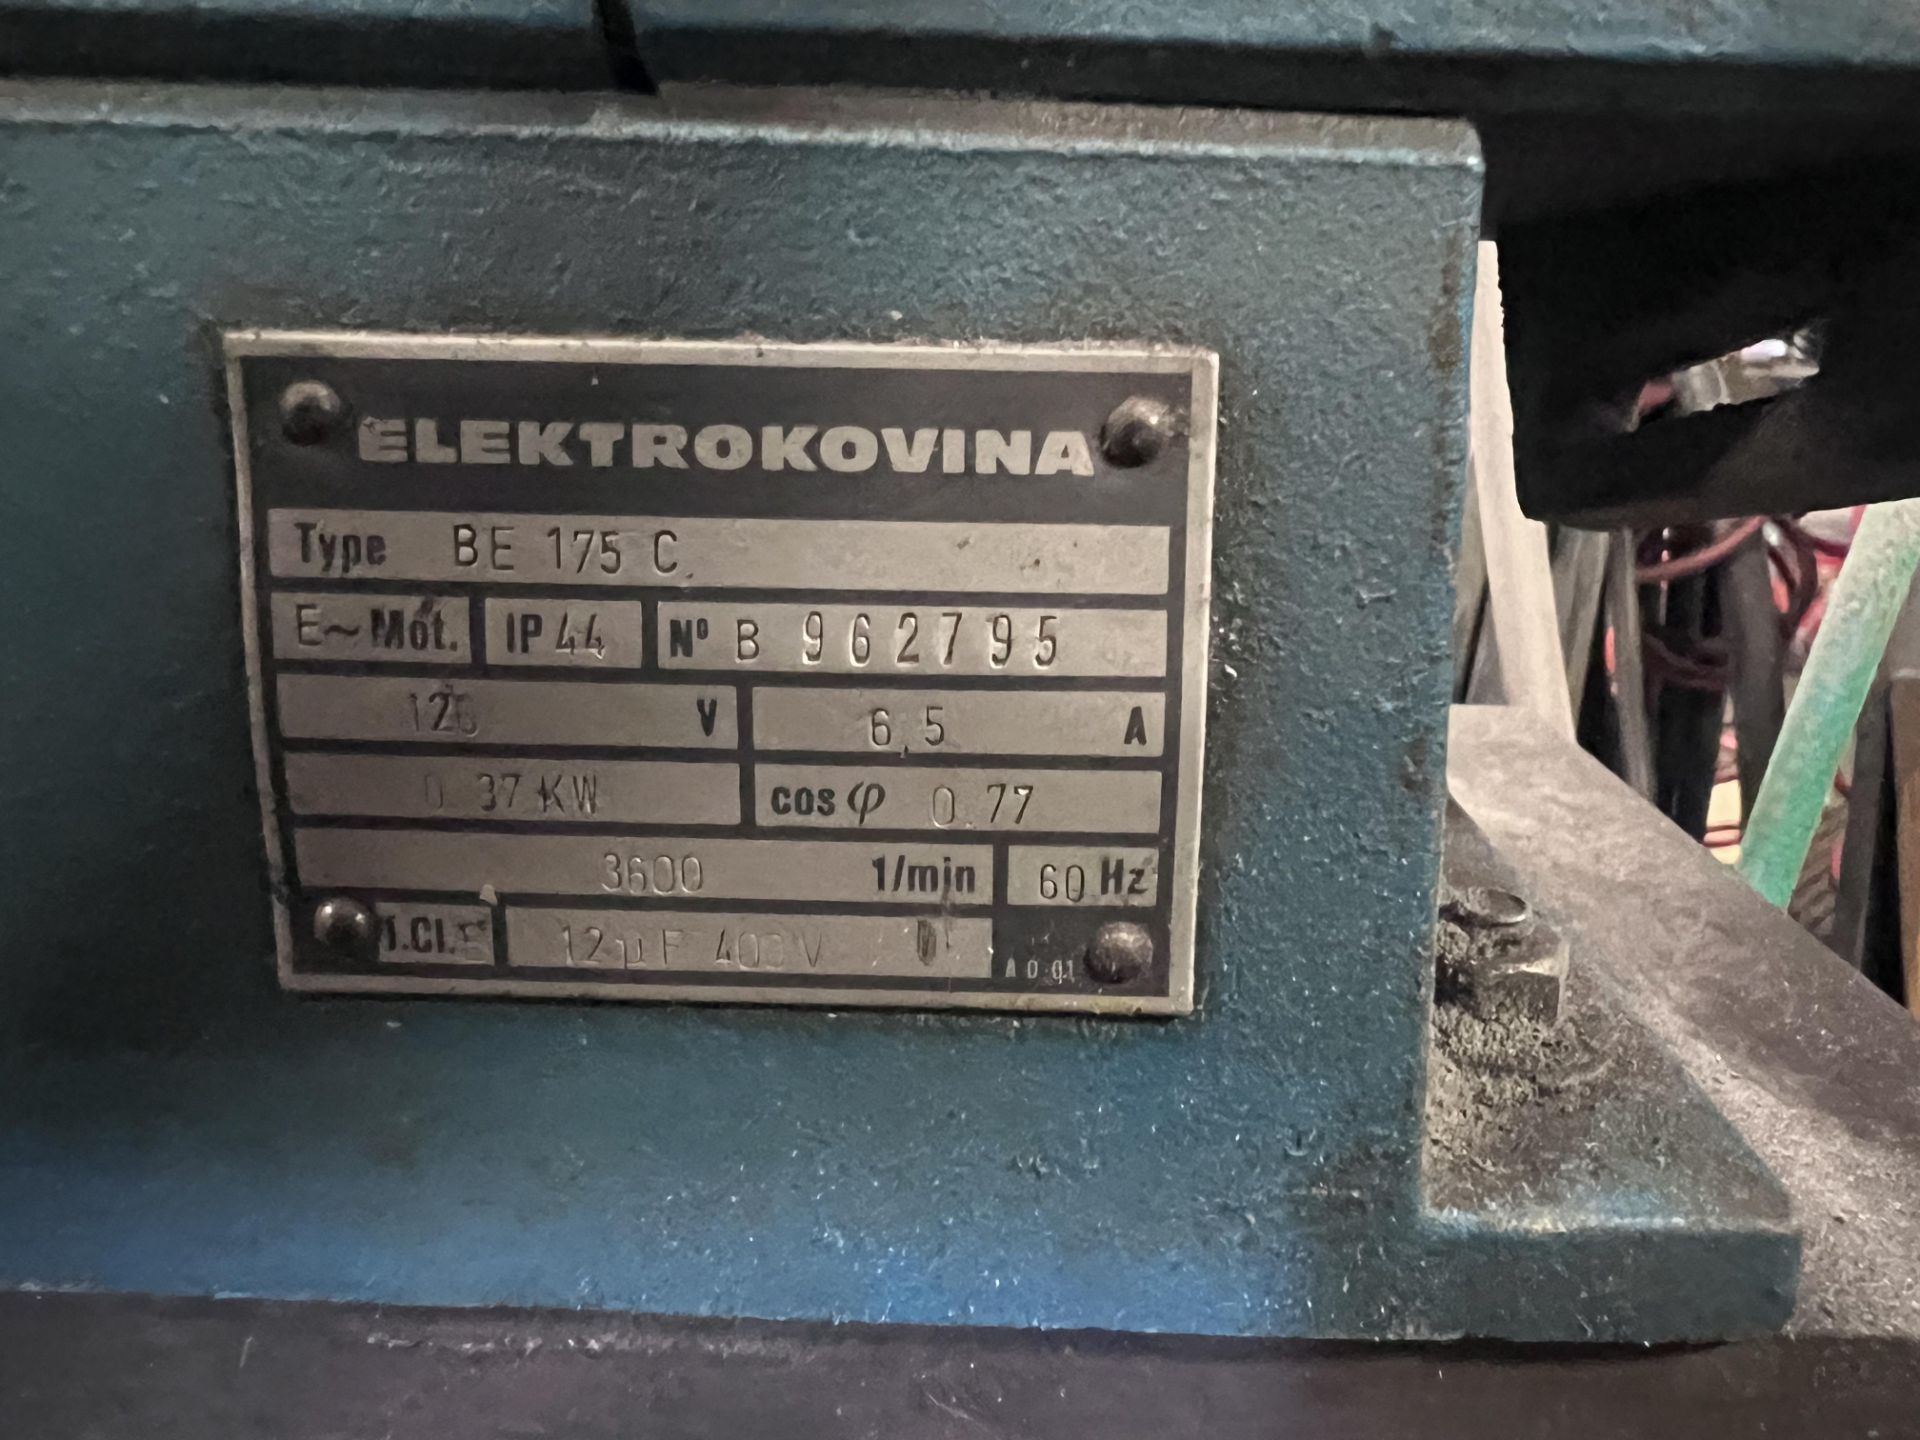 ELECTROKOVINA 110V GRINDER - Image 2 of 2